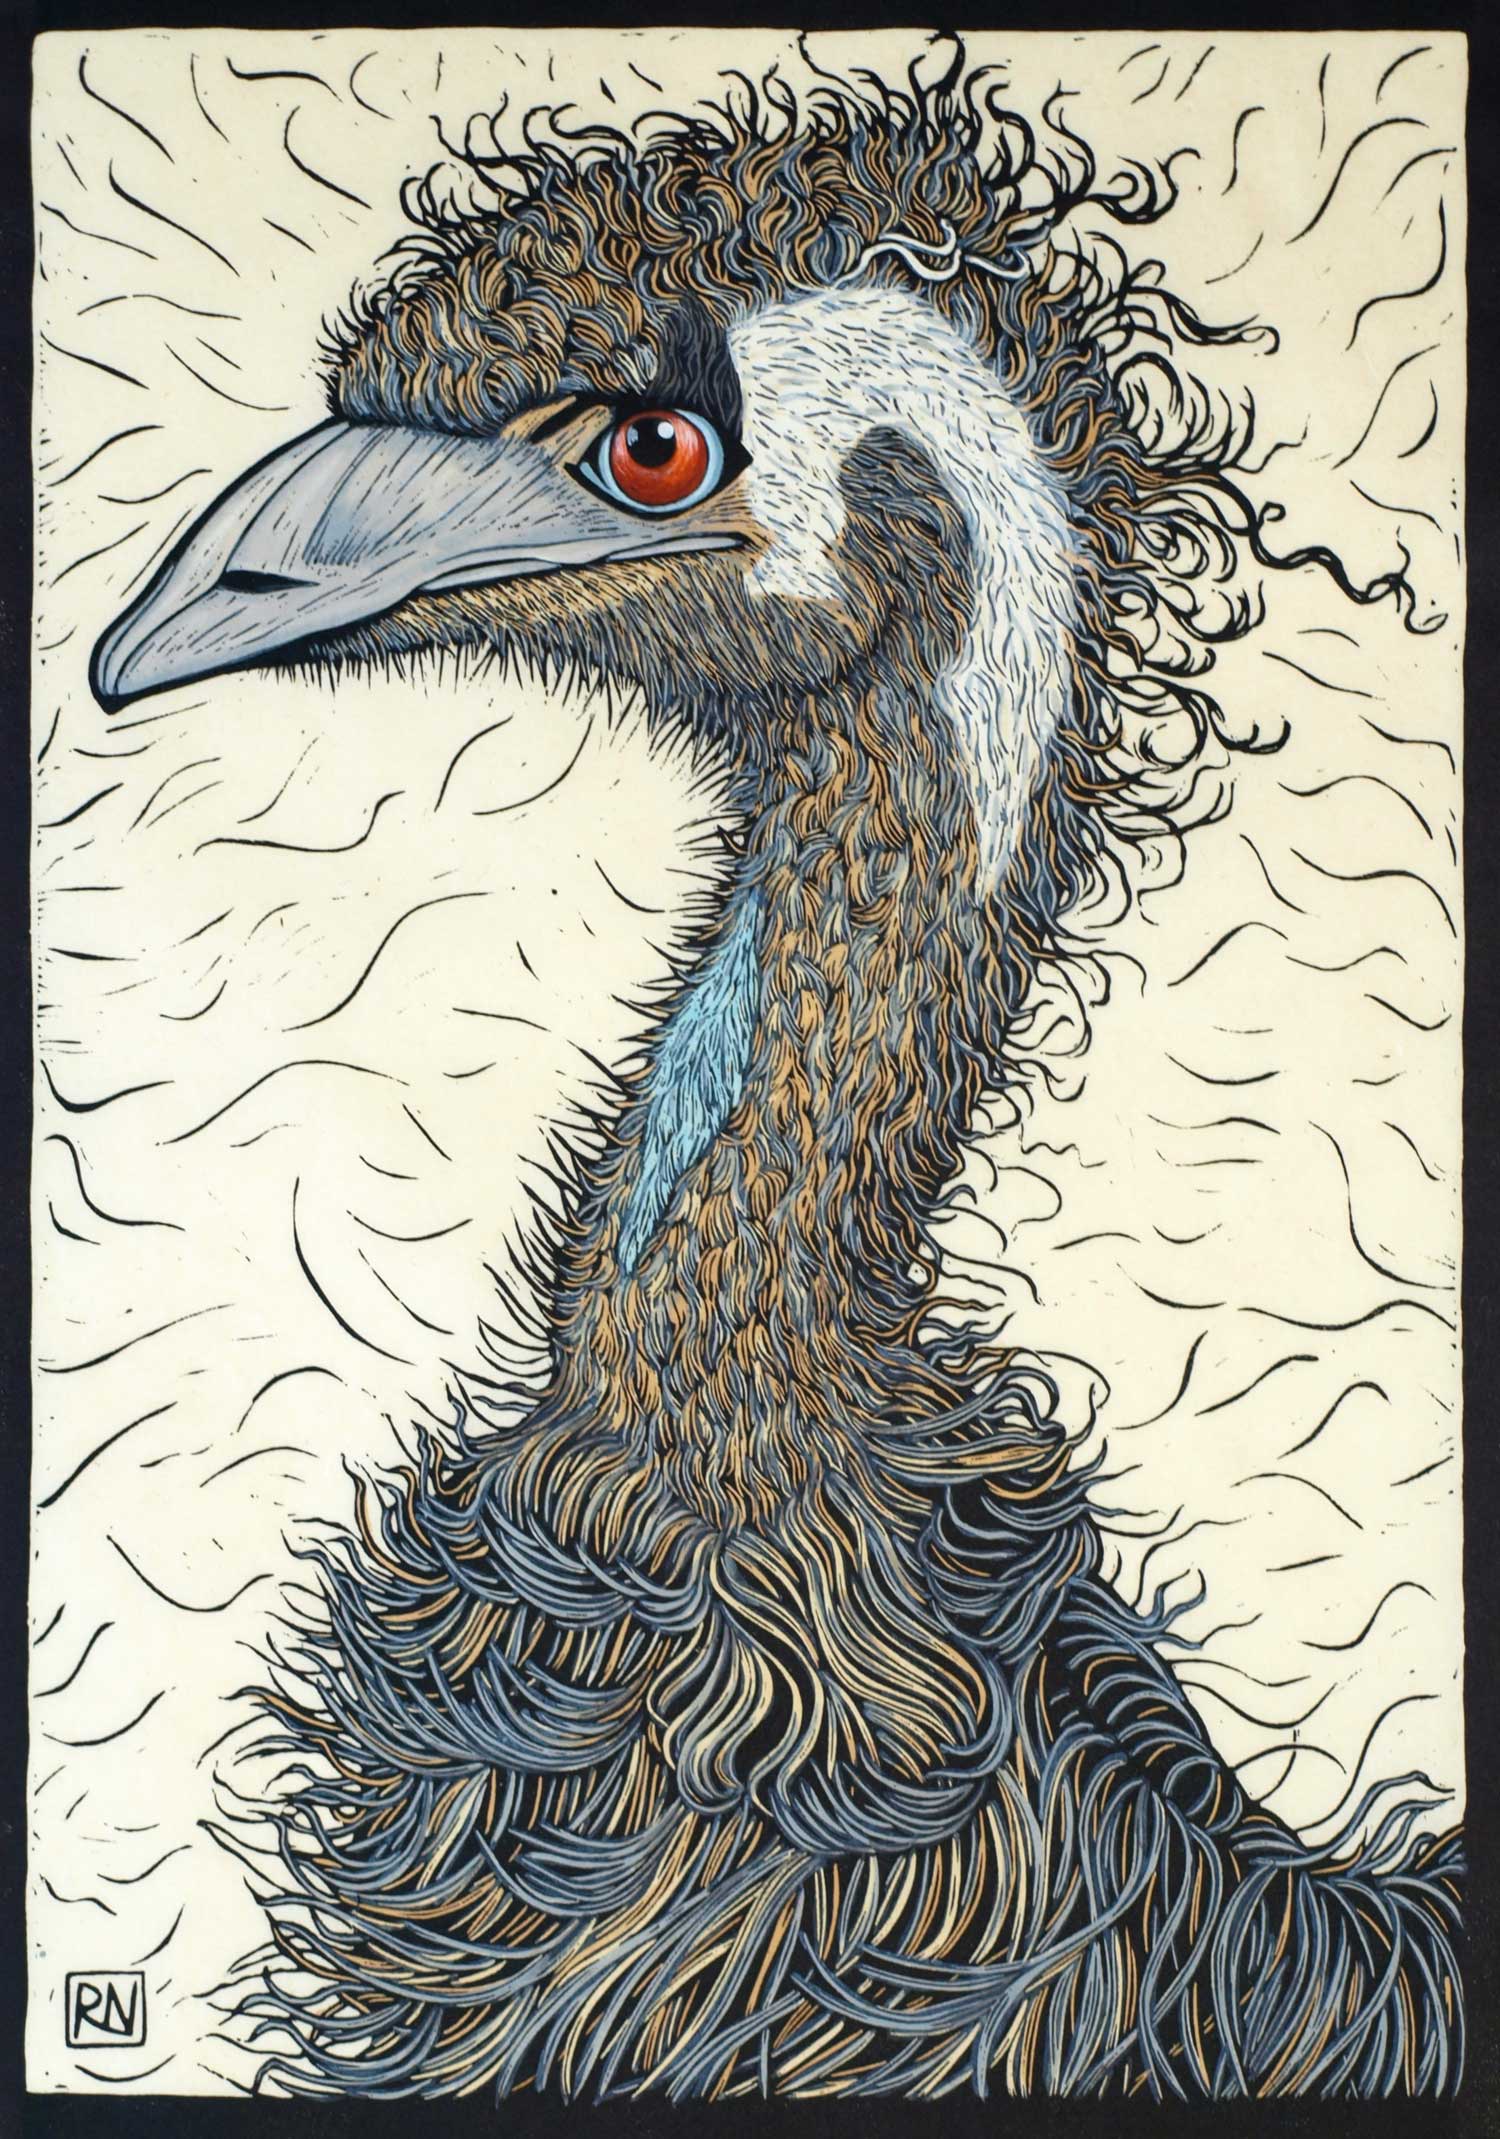 emu-linocut-rachel-newling.jpg